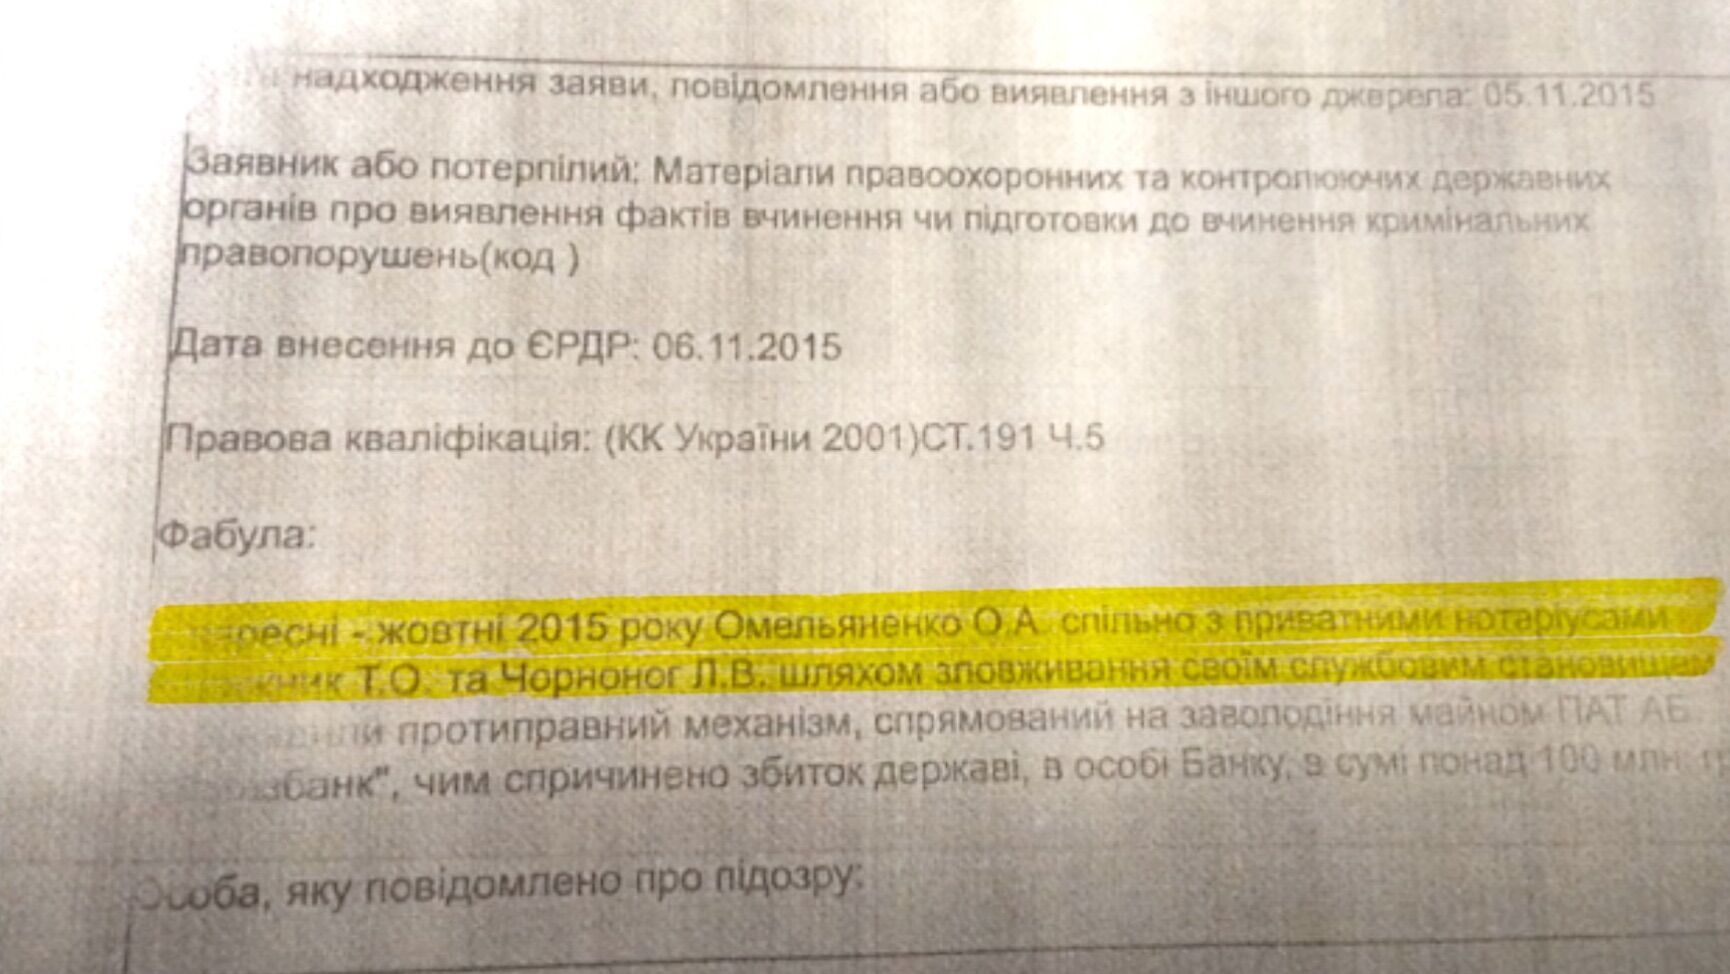 Алексея Омельяненко подозревали в выводе средств государства из-за ''Укргазбанка''